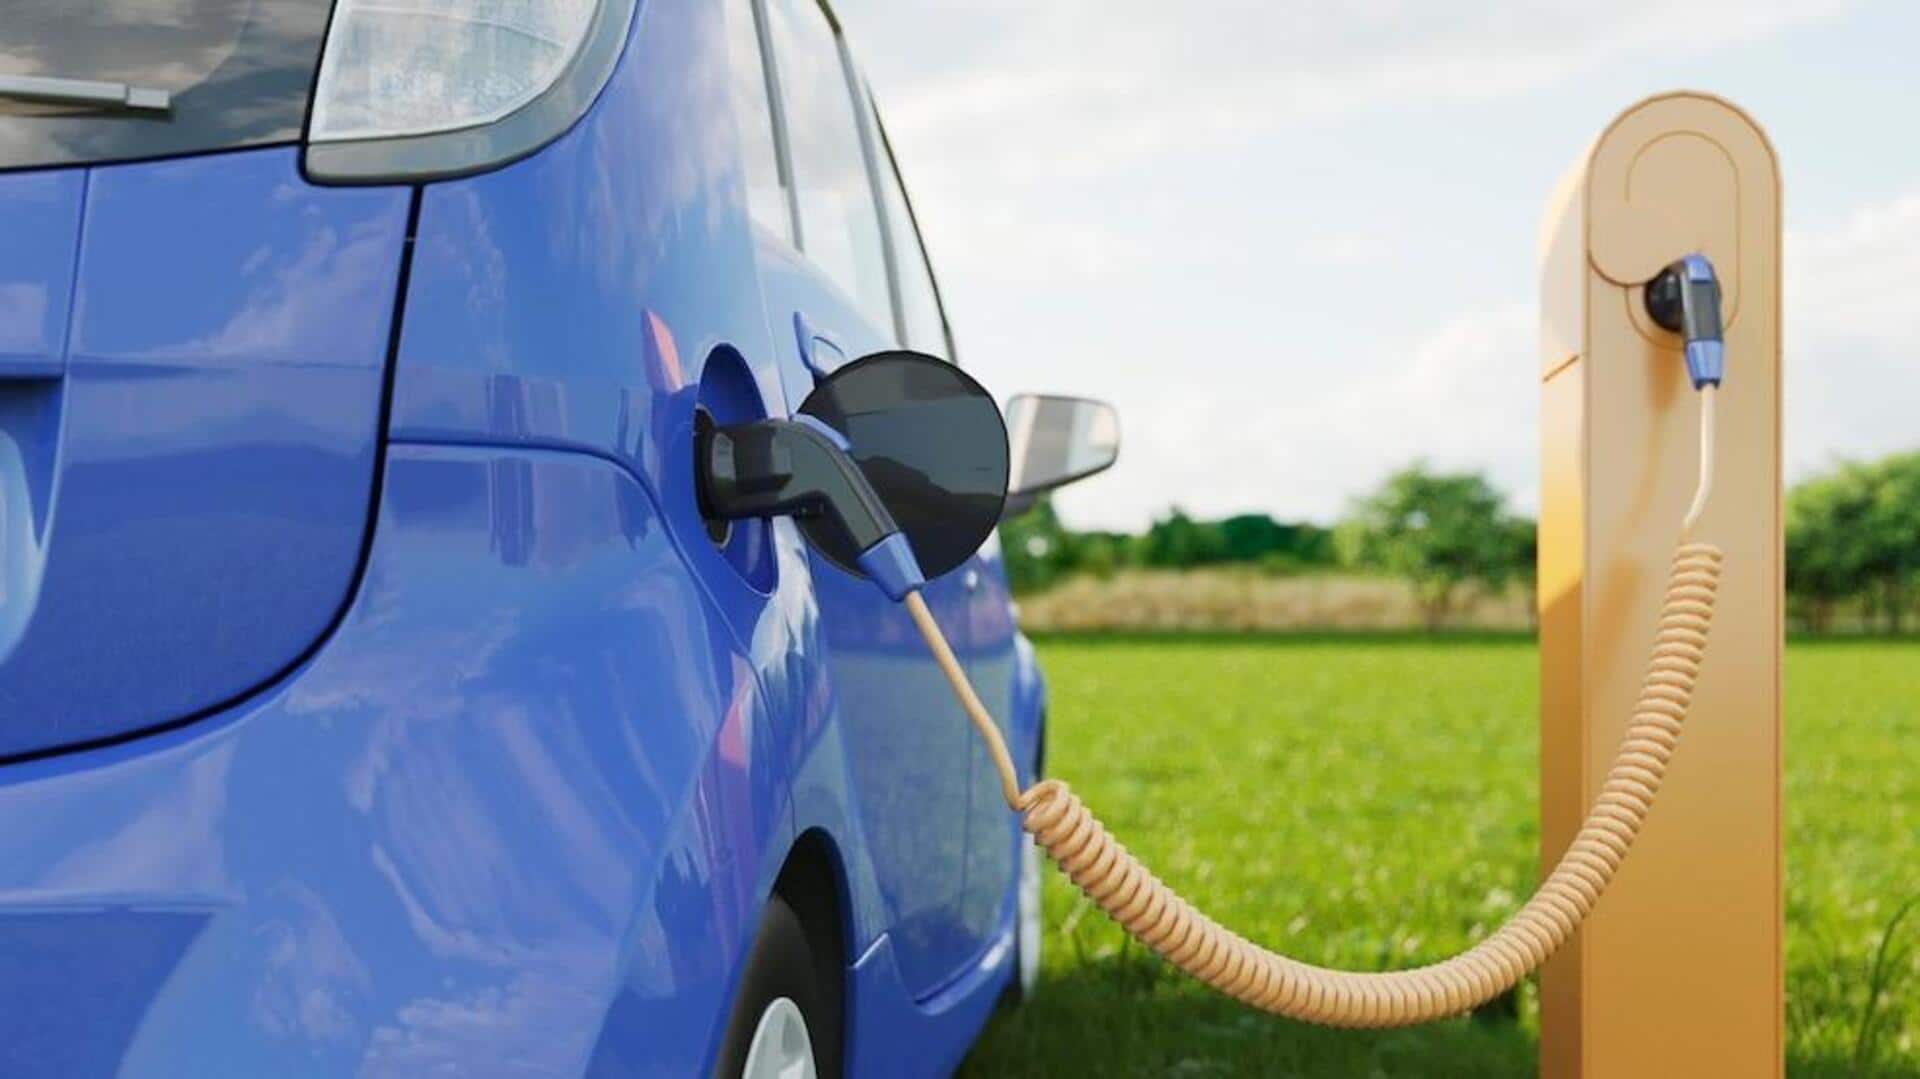 2029 तक इलेक्ट्रिक और पेट्रोल-डीजल कारों की कीमत हो जाएगी बराबर, अध्ययन में दावा 